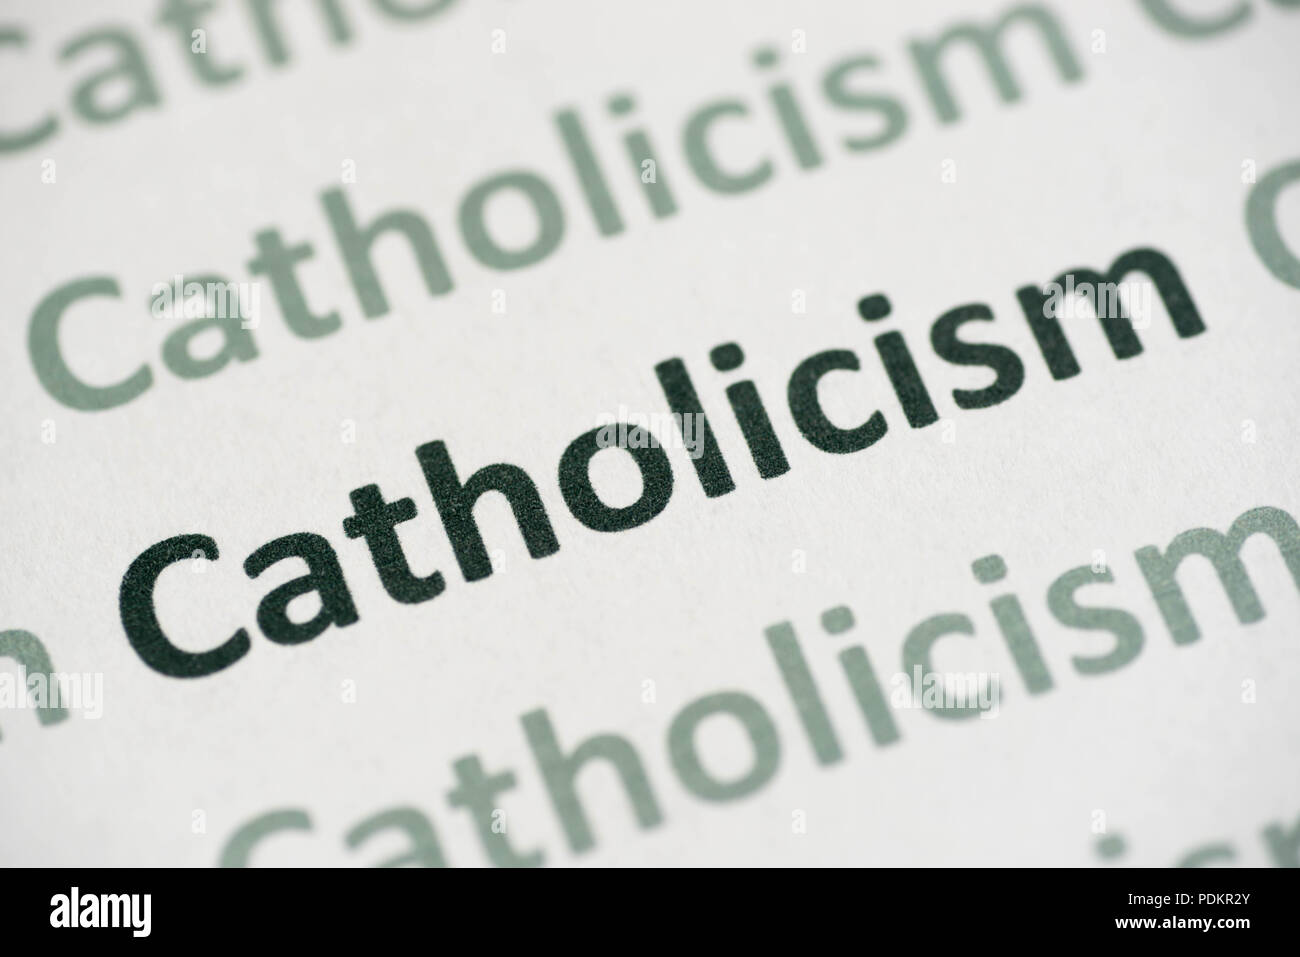 Le Catholicisme de mots imprimés sur papier blanc macro Banque D'Images